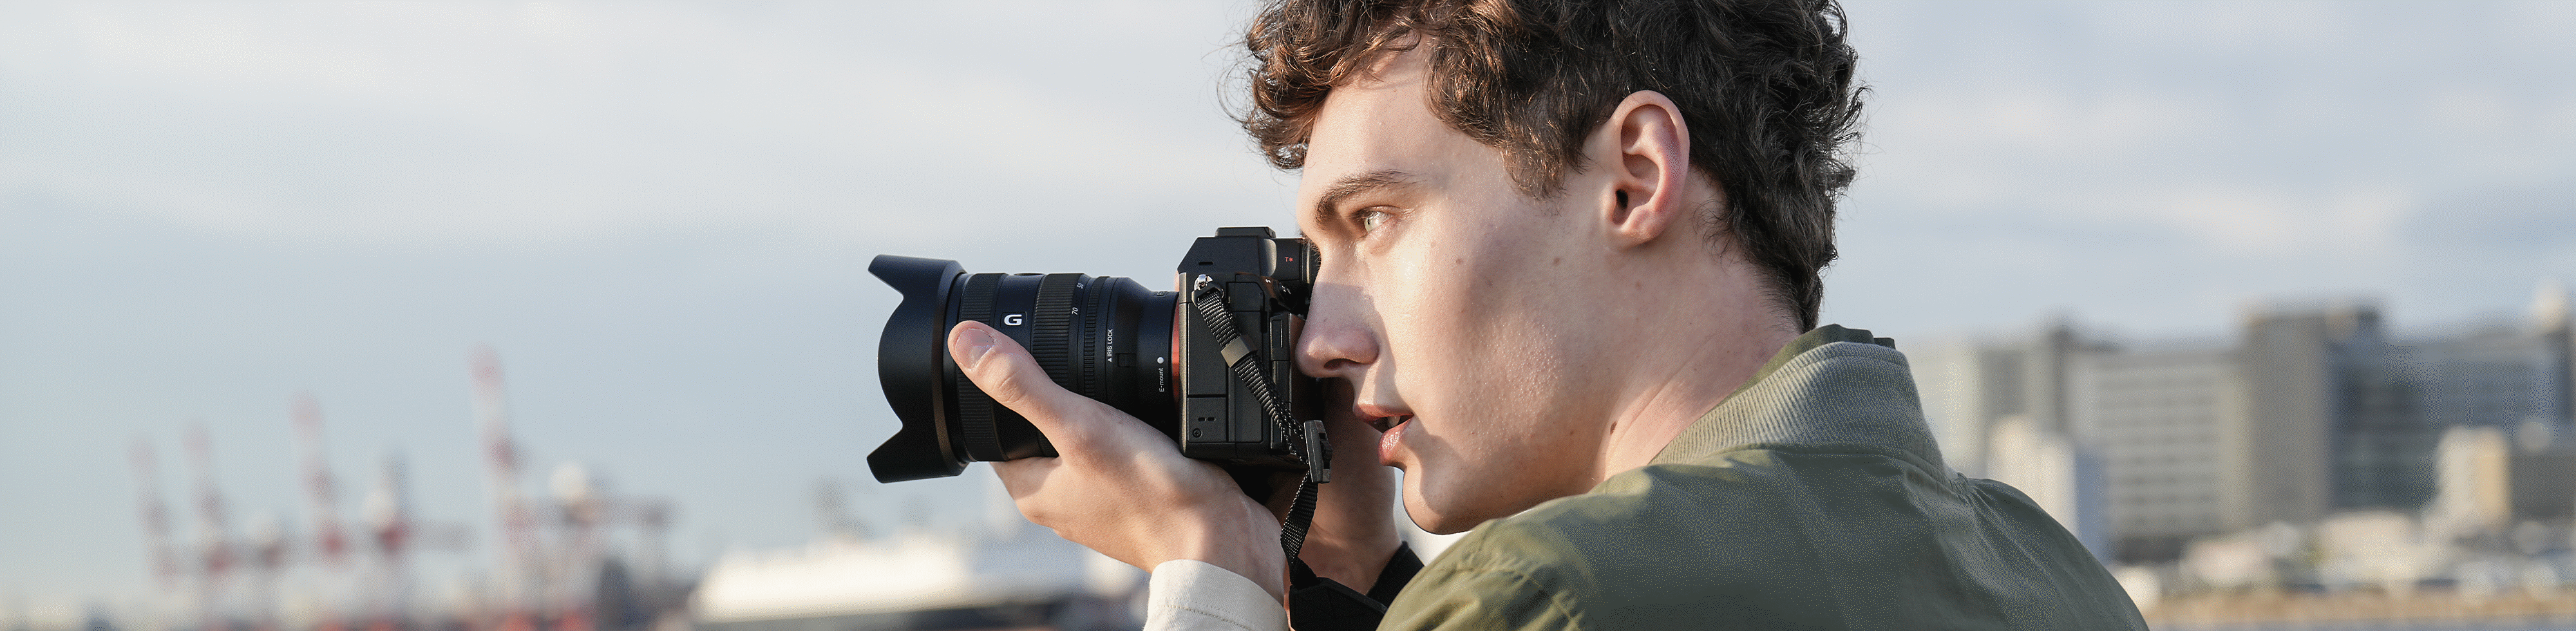 男子手持相機，使用觀景窗在海邊拍攝